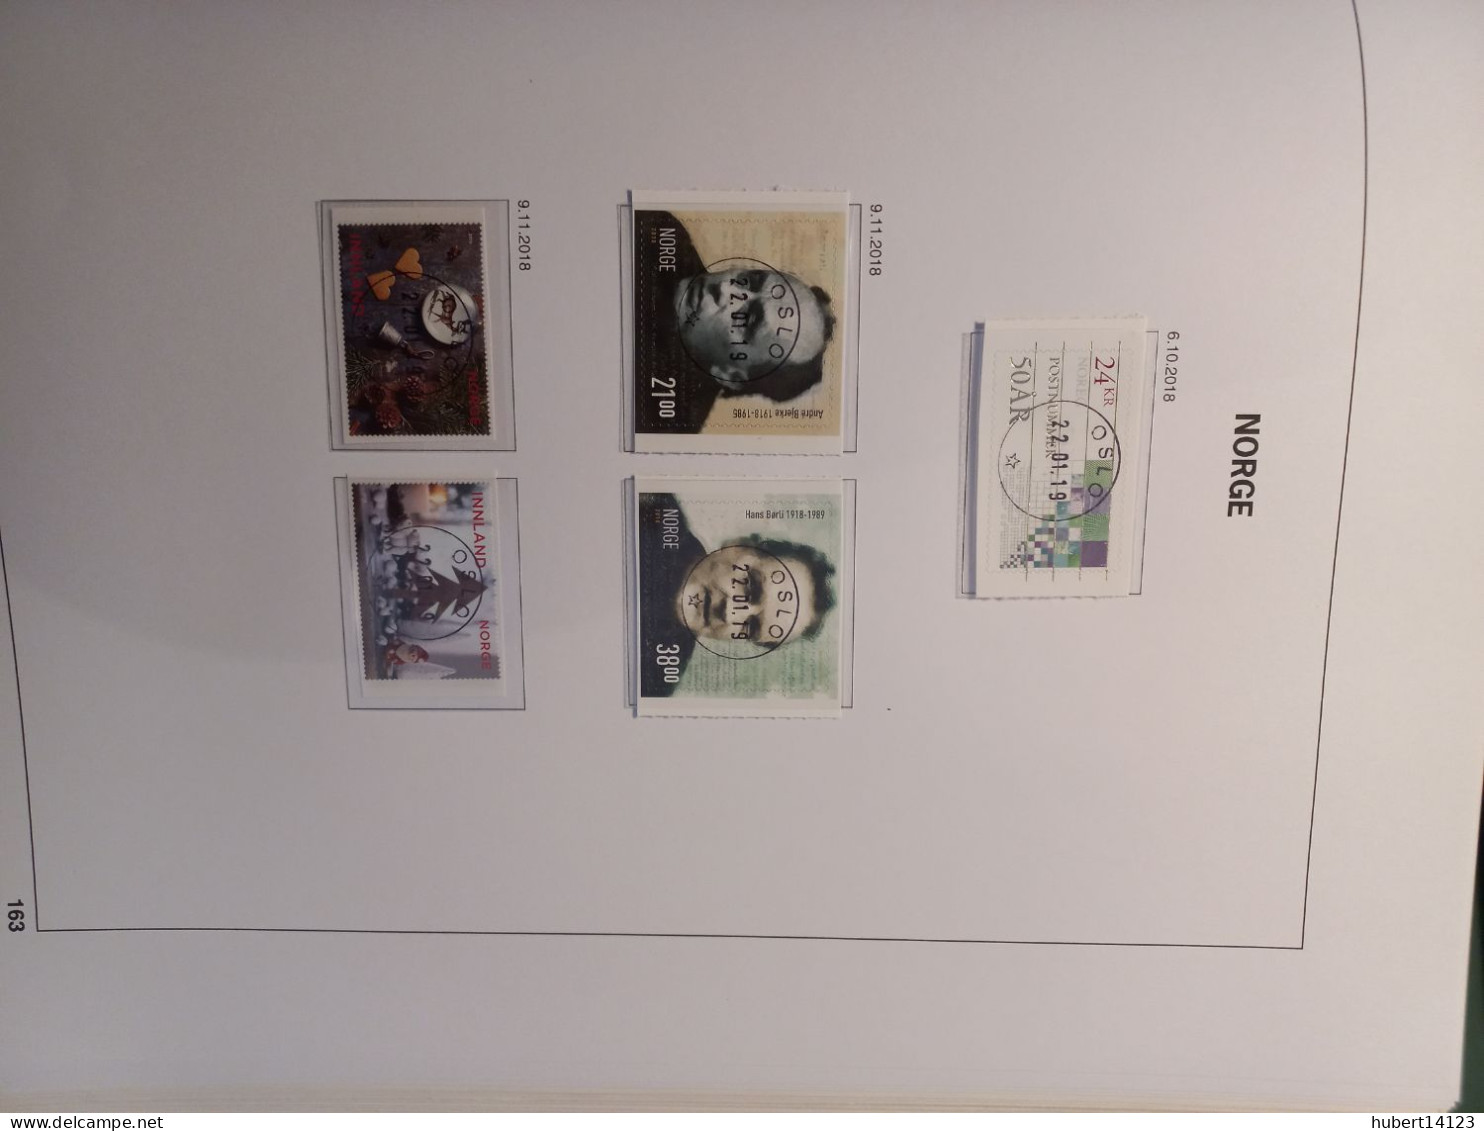 NORVEGE NORGE ALBUM DAVO COMPLET DE 2002 à 2018 feuilles avec pochettes transparentes